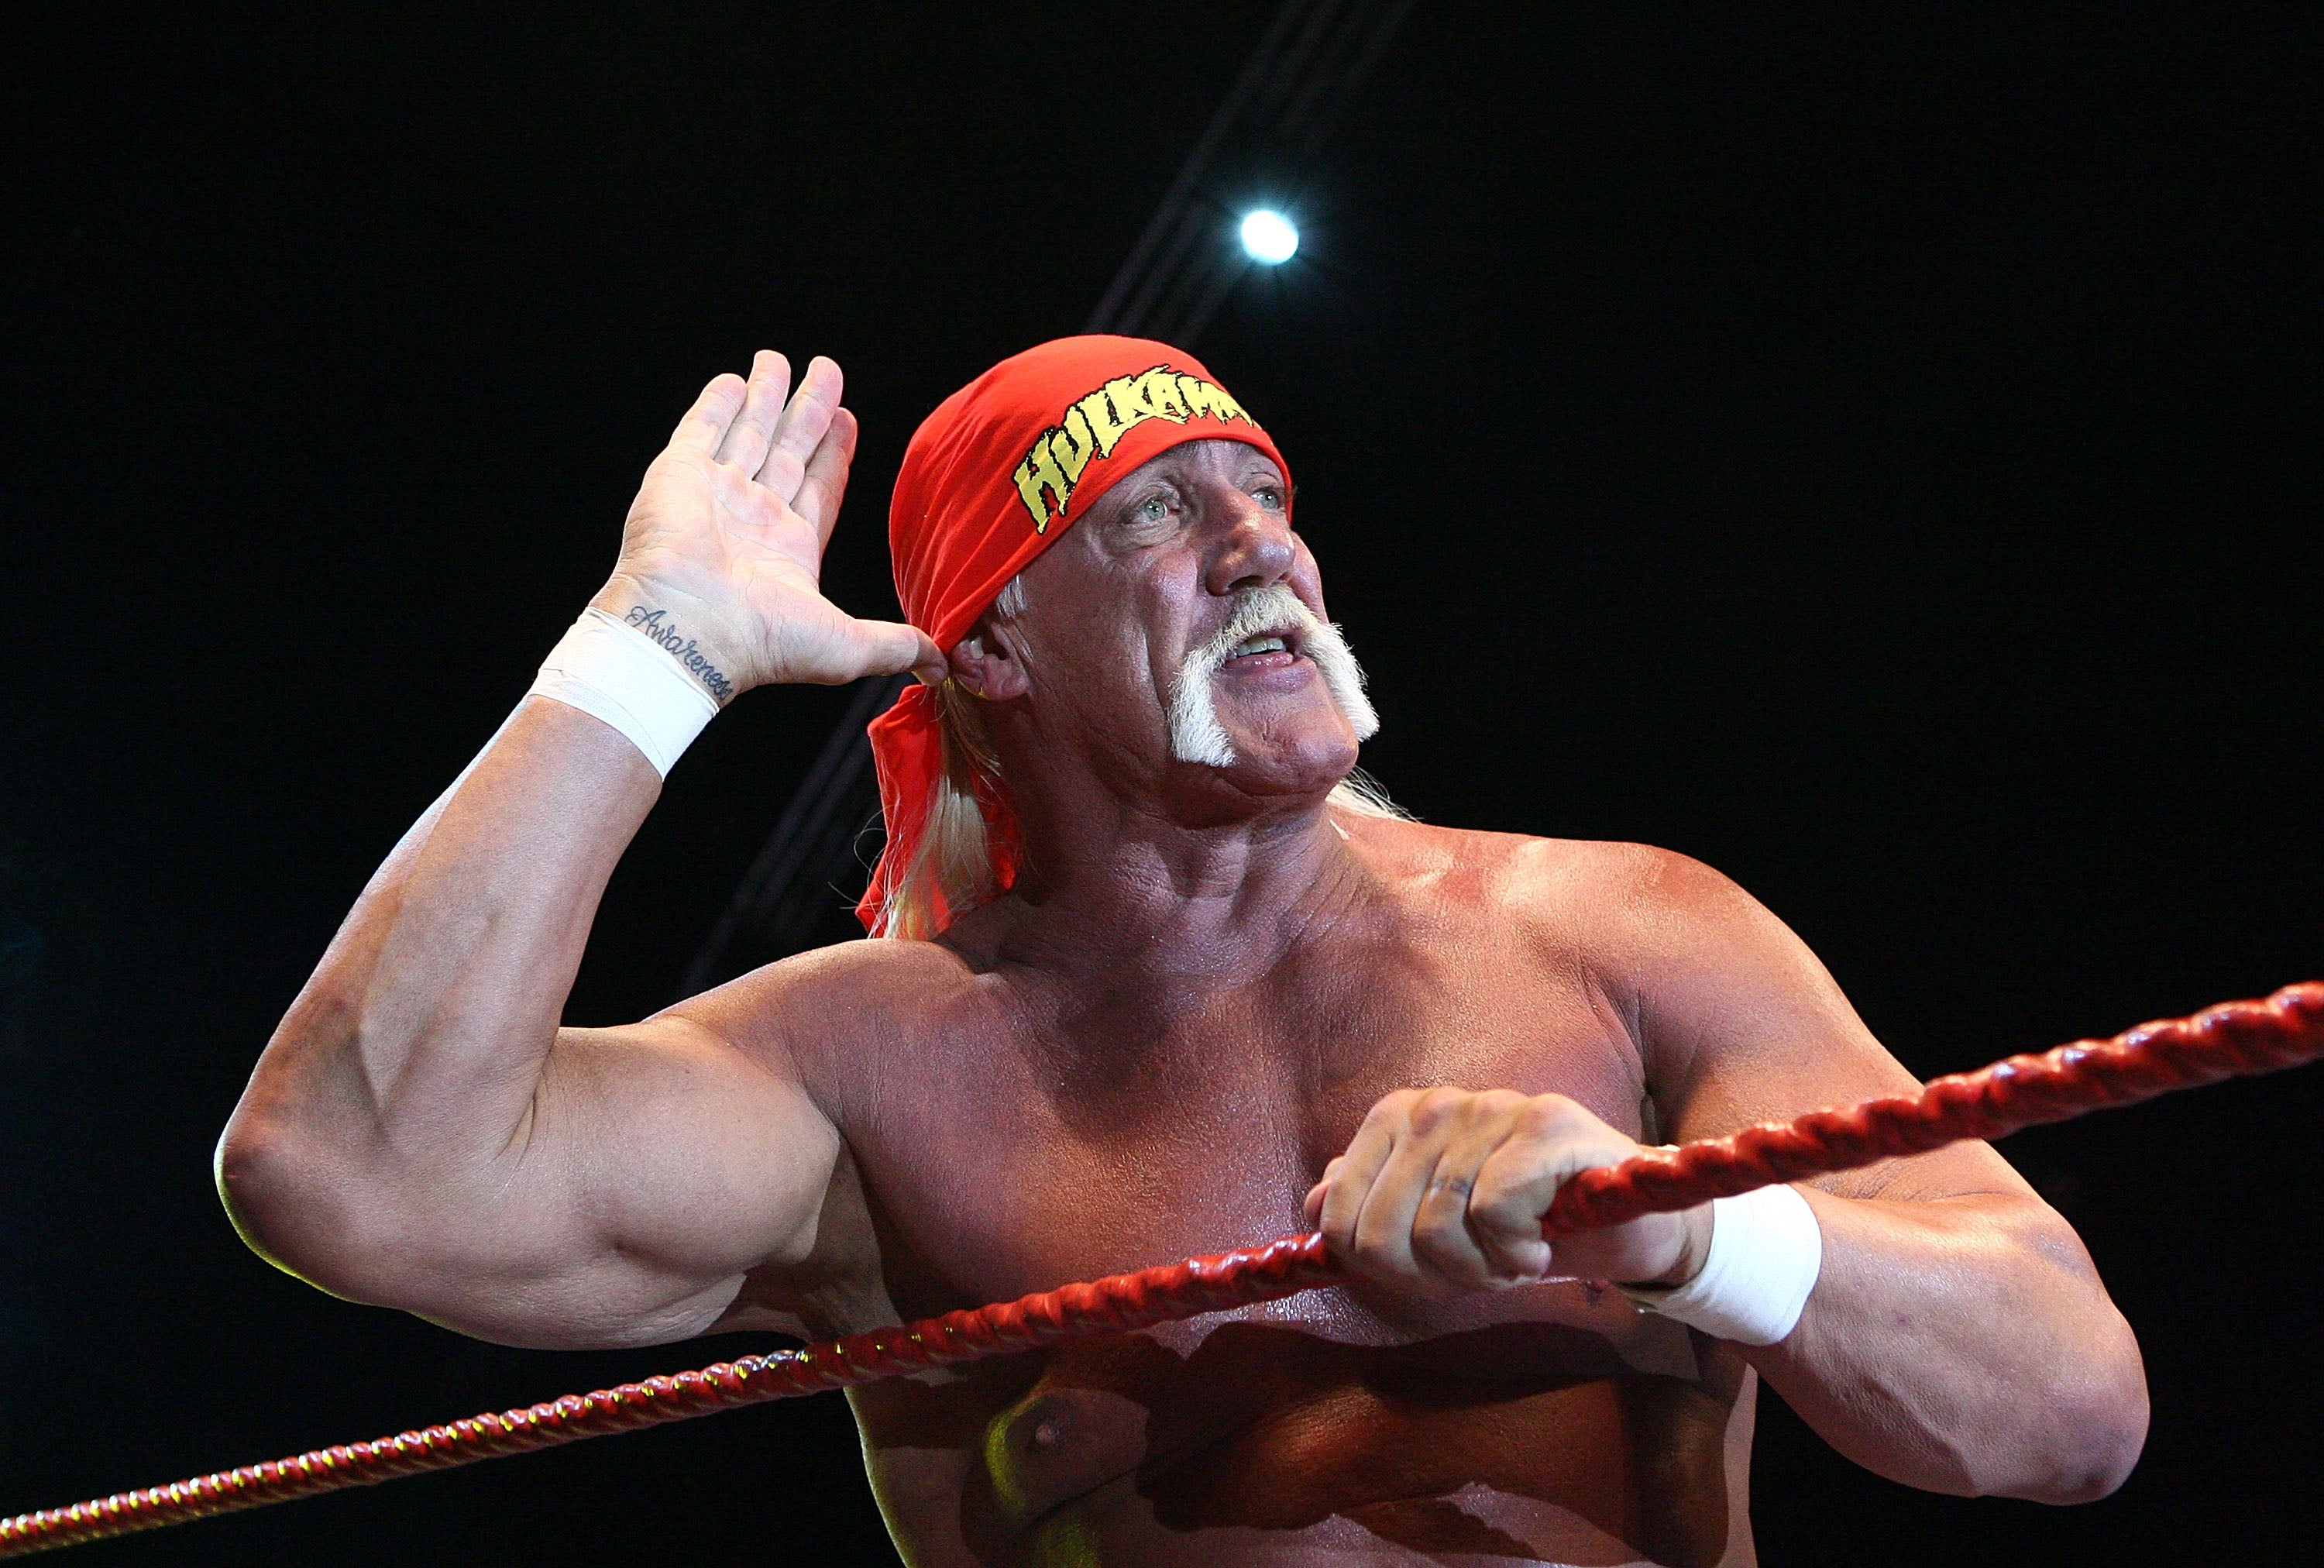 Hulk Hogan in the ring in Perth, Australia, in November 2009